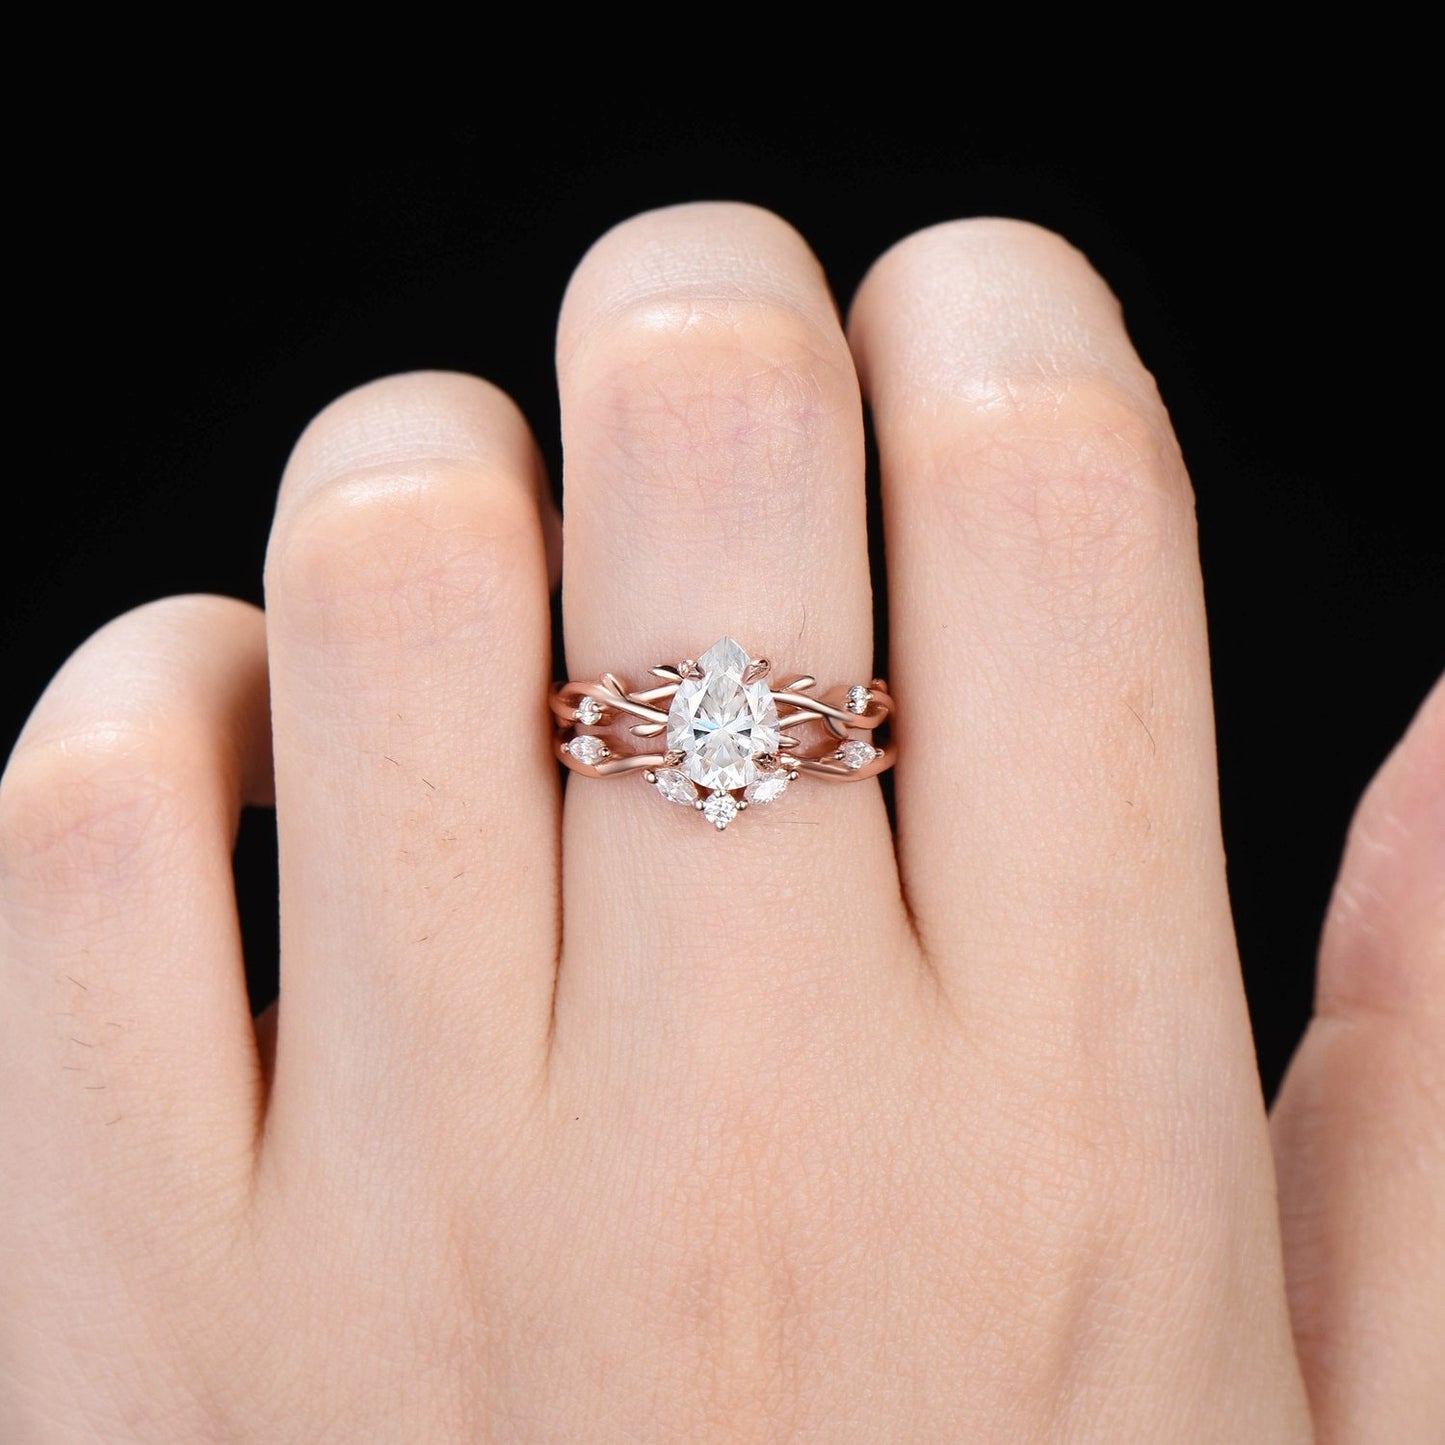 Nature Inspired Moissanite Engagement Ring Set Twist Vine Ring 1.25ct Pear Moissanite Diamond Wedding Ring Teardrop Moissanite Bridal Set